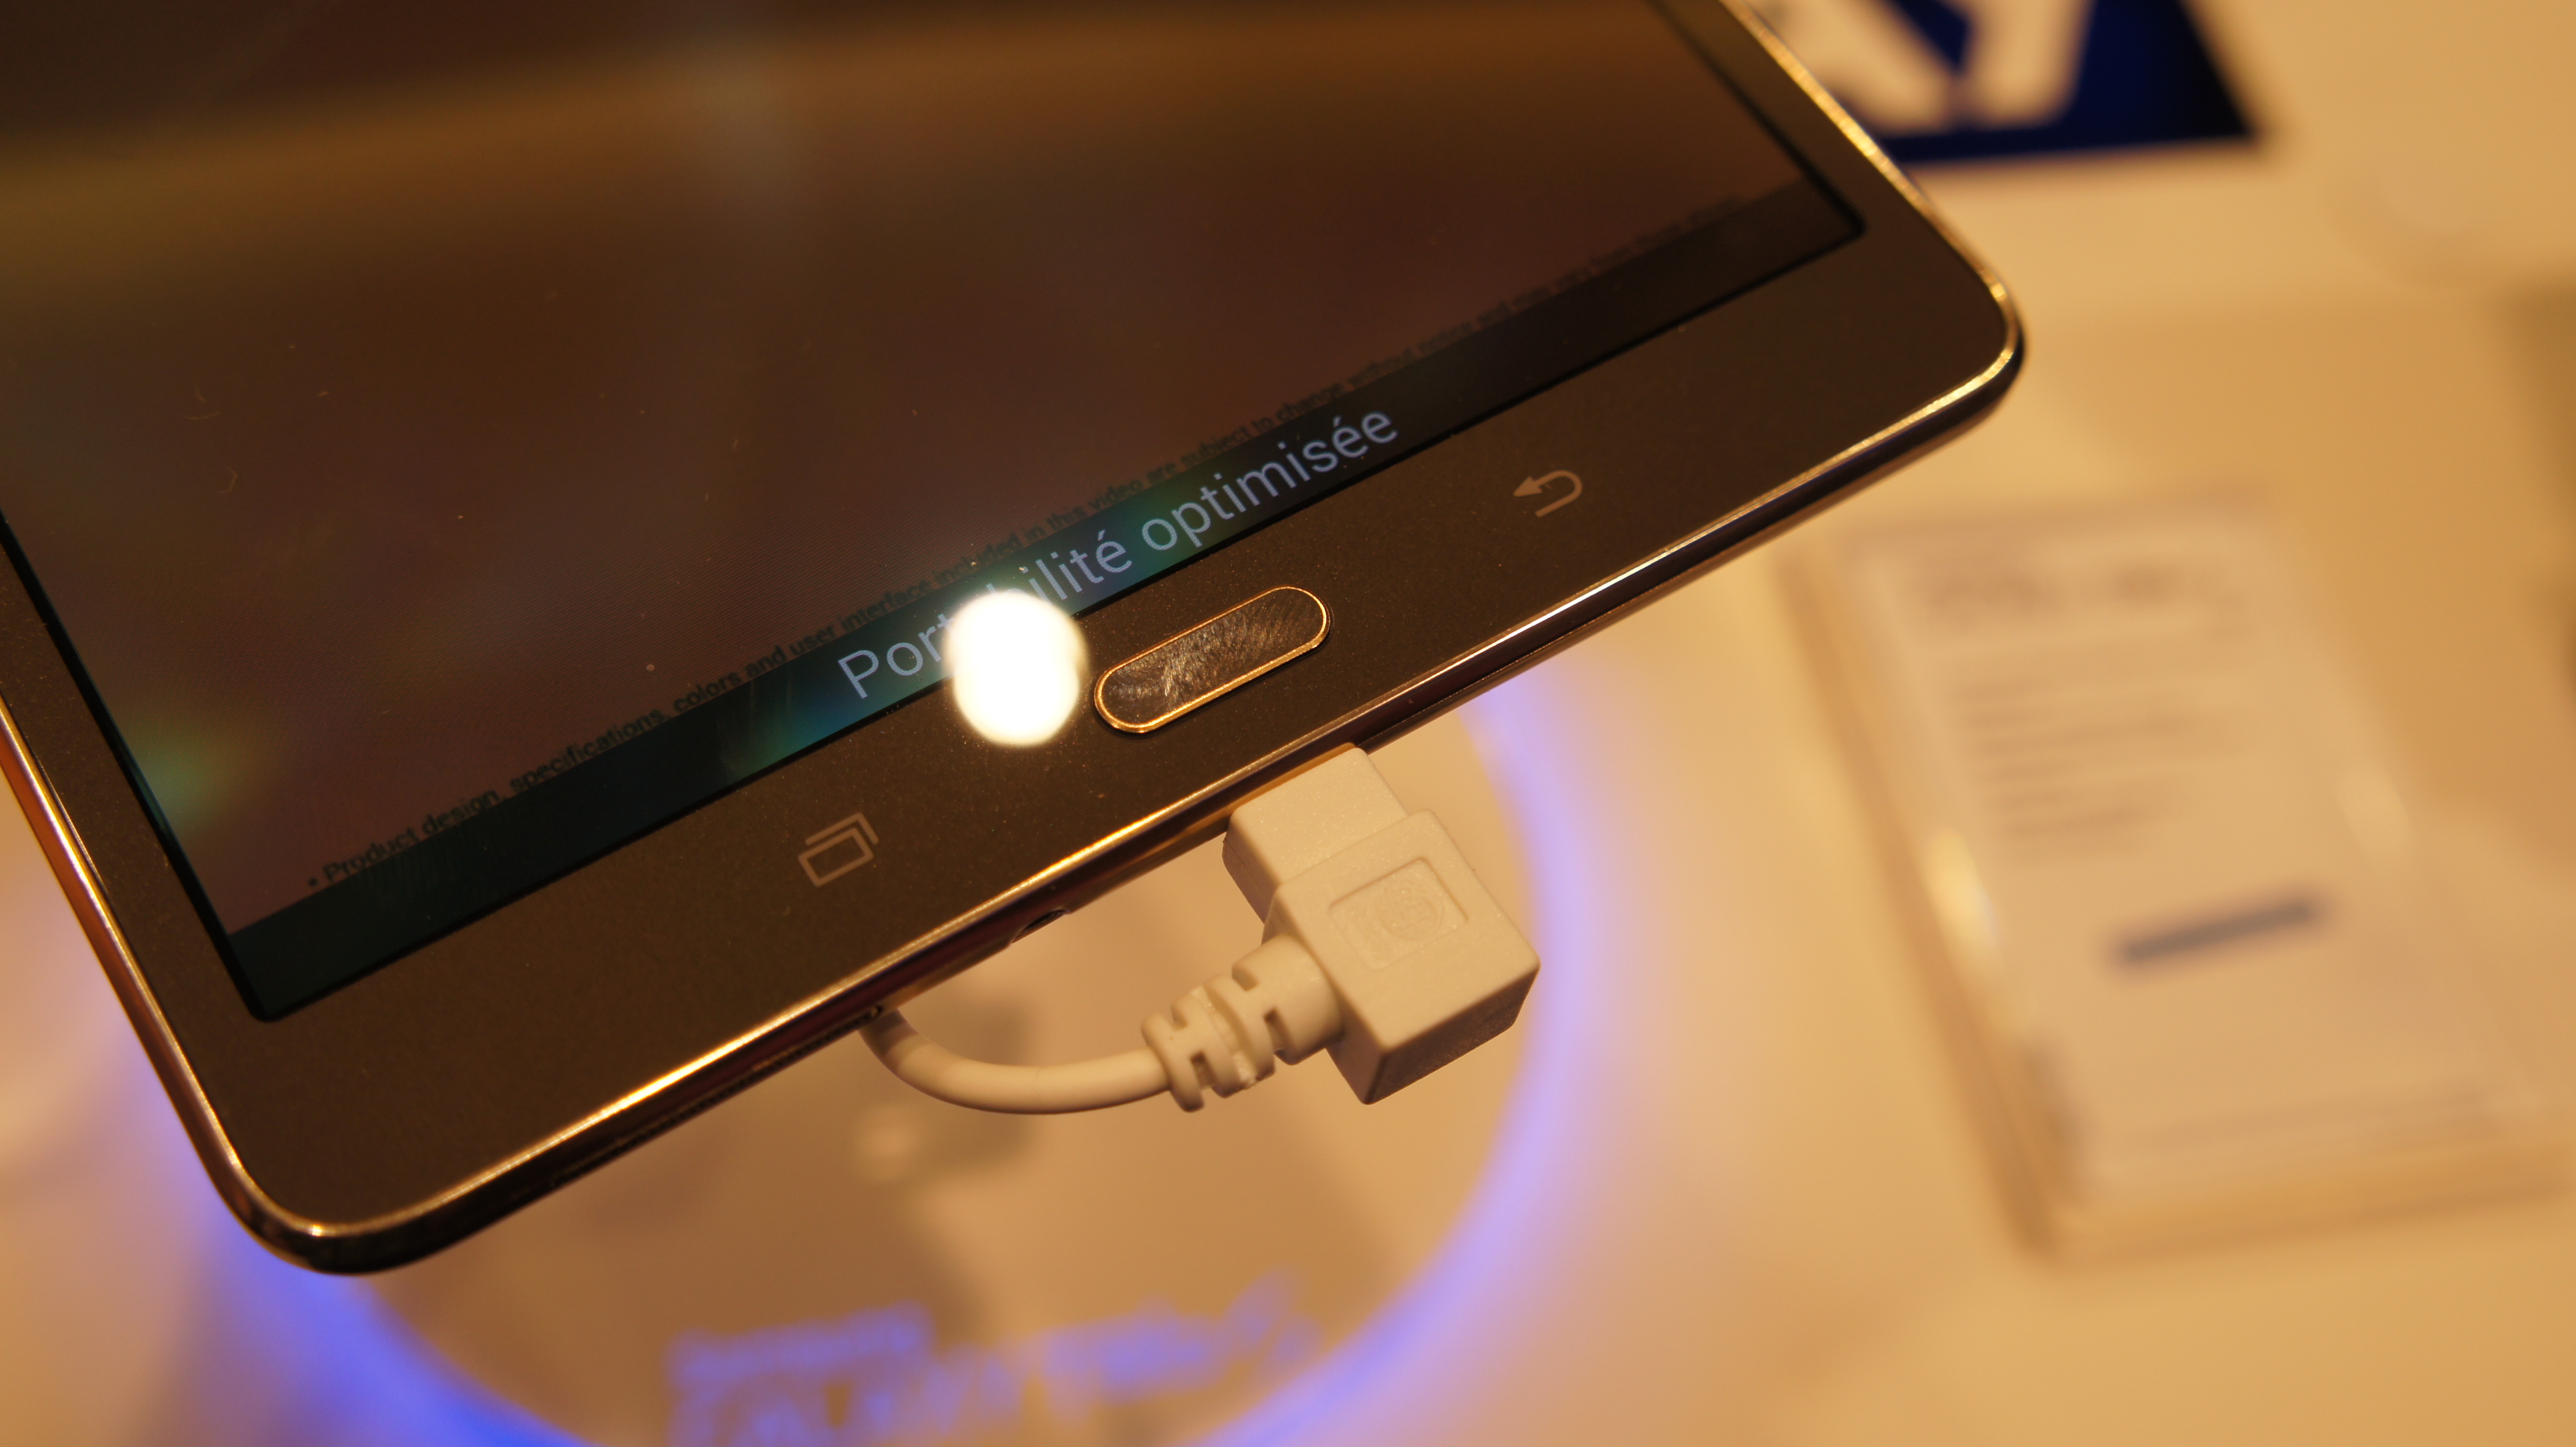 Prise en main des Samsung Galaxy Tab S : puissance, finesse, et